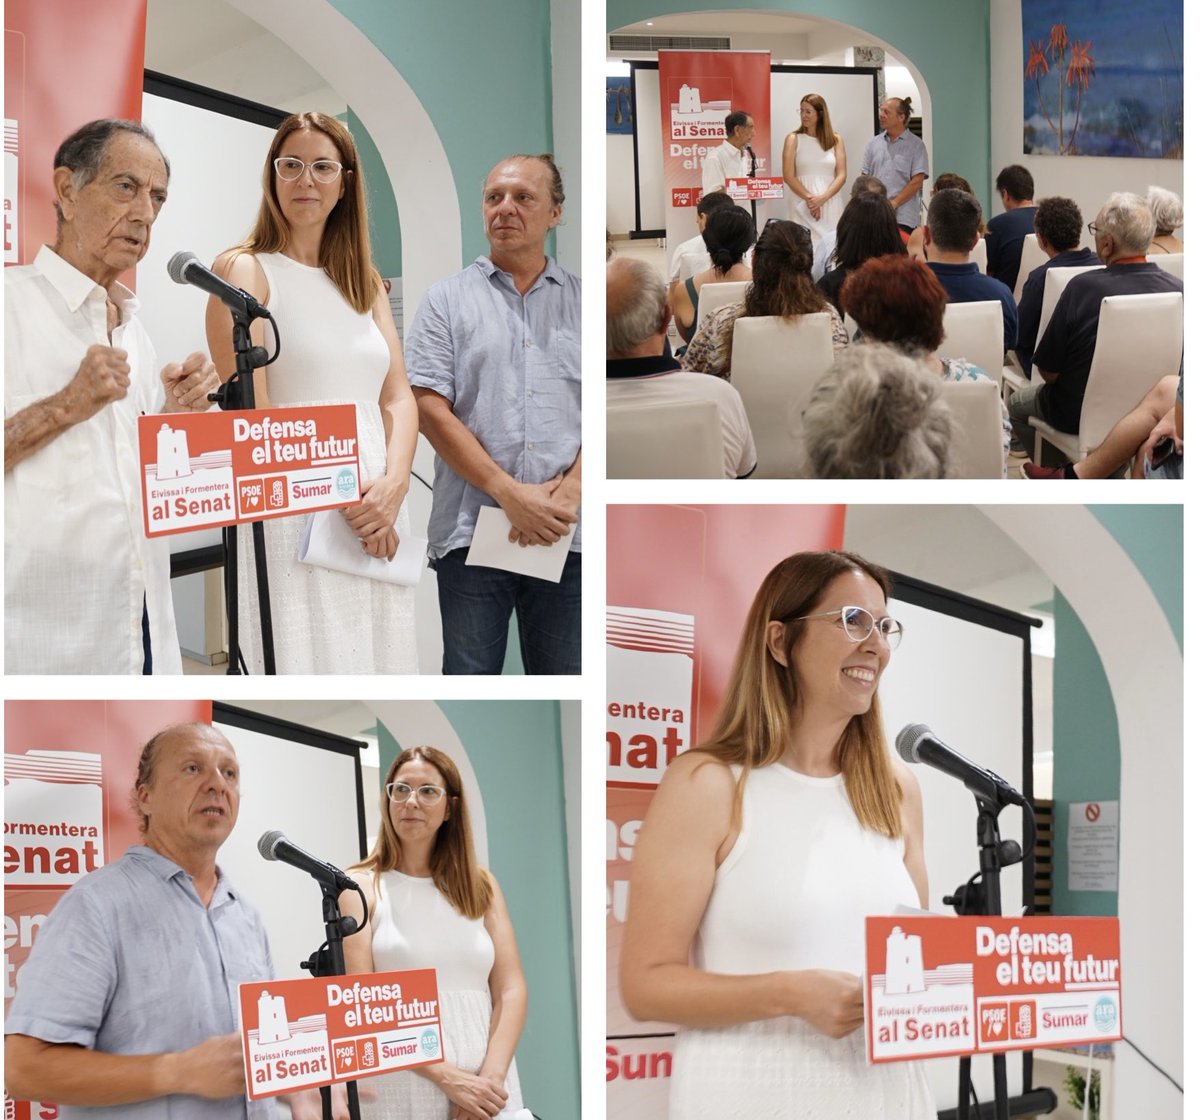 “Formentera és progressista i ho tornarà a demostrar el dia 23 de juliol” Gràcies, Isidor Torres, per acompanyar-nos i per les teues paraules de suport a la “candidatura guanyadora”! #DefensaElTeuFutur #VotaEiFAlSenat #Formentera #Eivissa